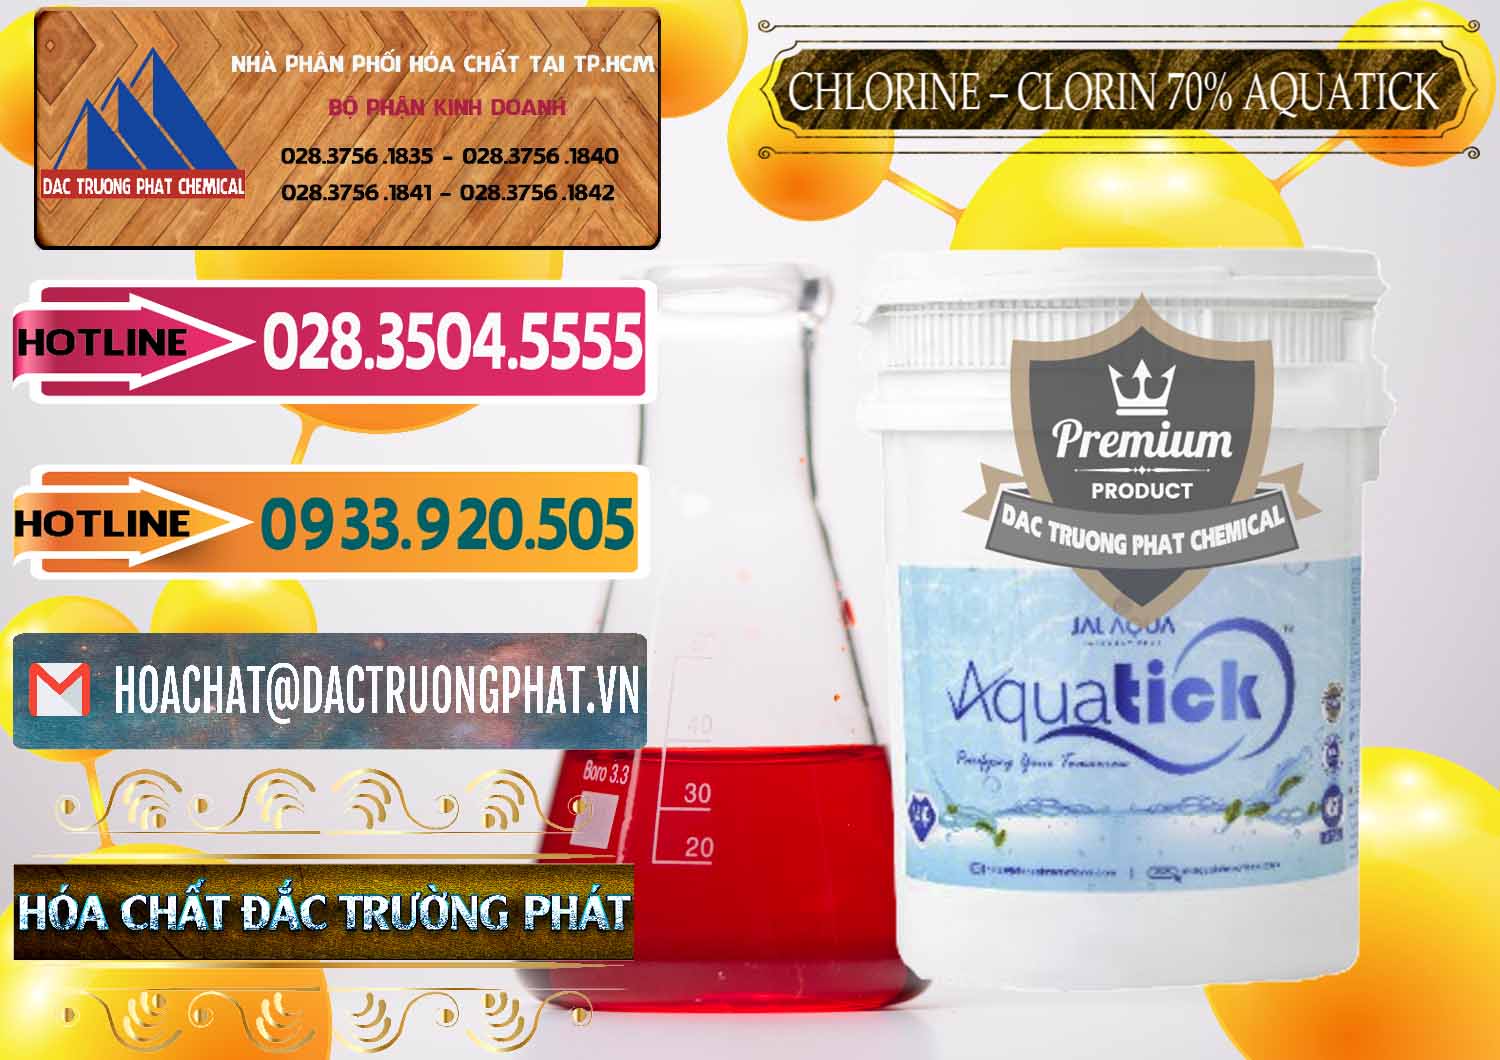 Cty phân phối ( bán ) Chlorine – Clorin 70% Aquatick Thùng Cao Jal Aqua Ấn Độ India - 0237 - Công ty kinh doanh & phân phối hóa chất tại TP.HCM - dactruongphat.vn